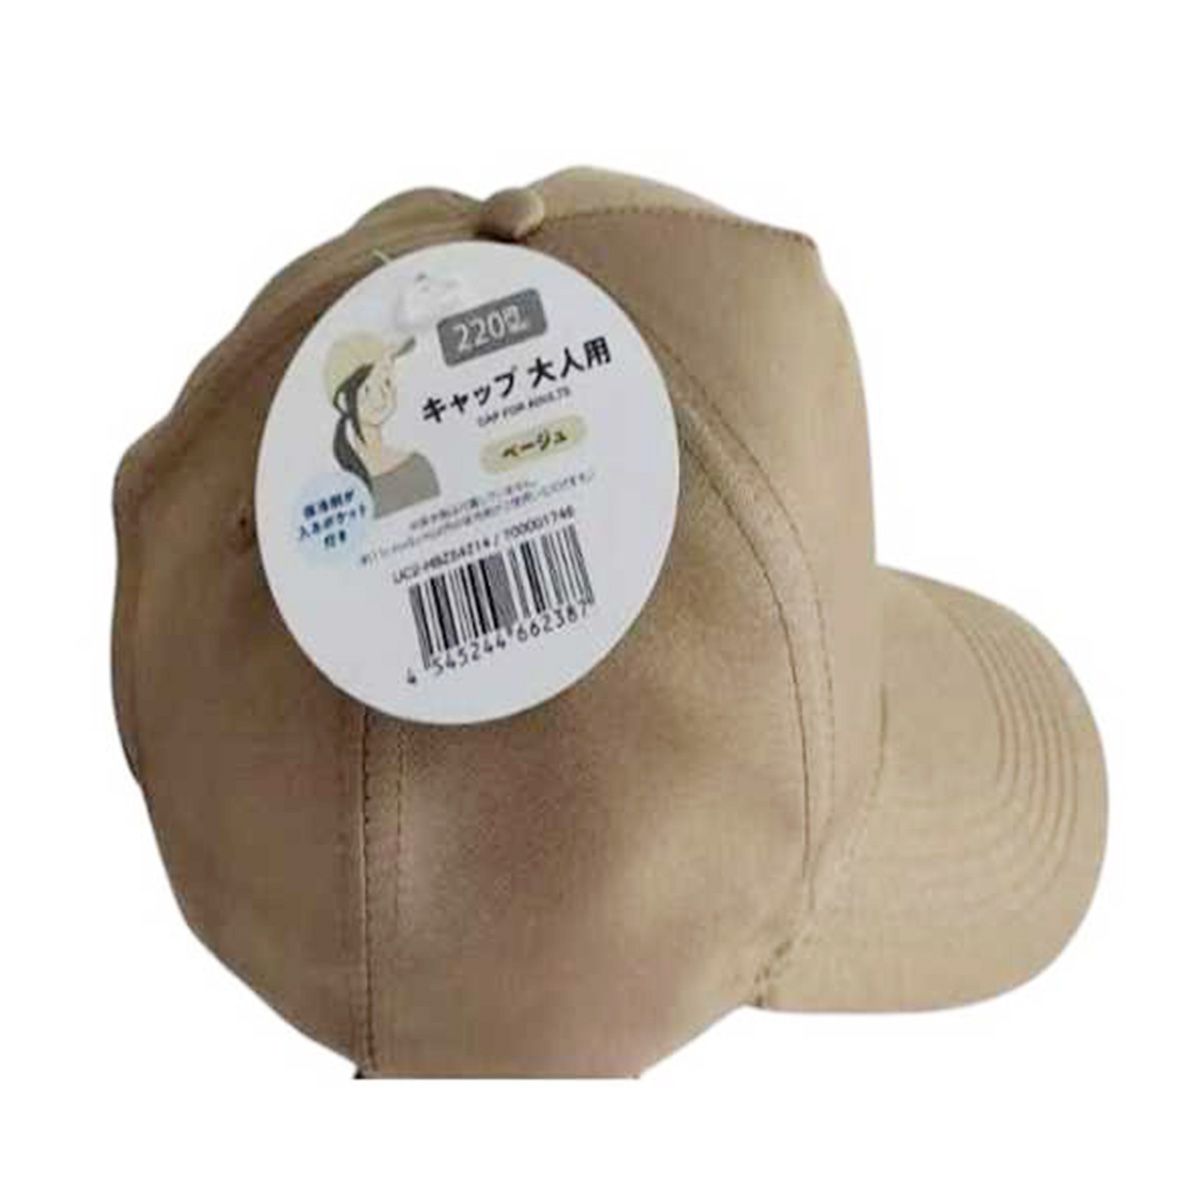 帽子 キャップ 保冷剤ポケット付きキャップ 大人用 ベージュ 365568